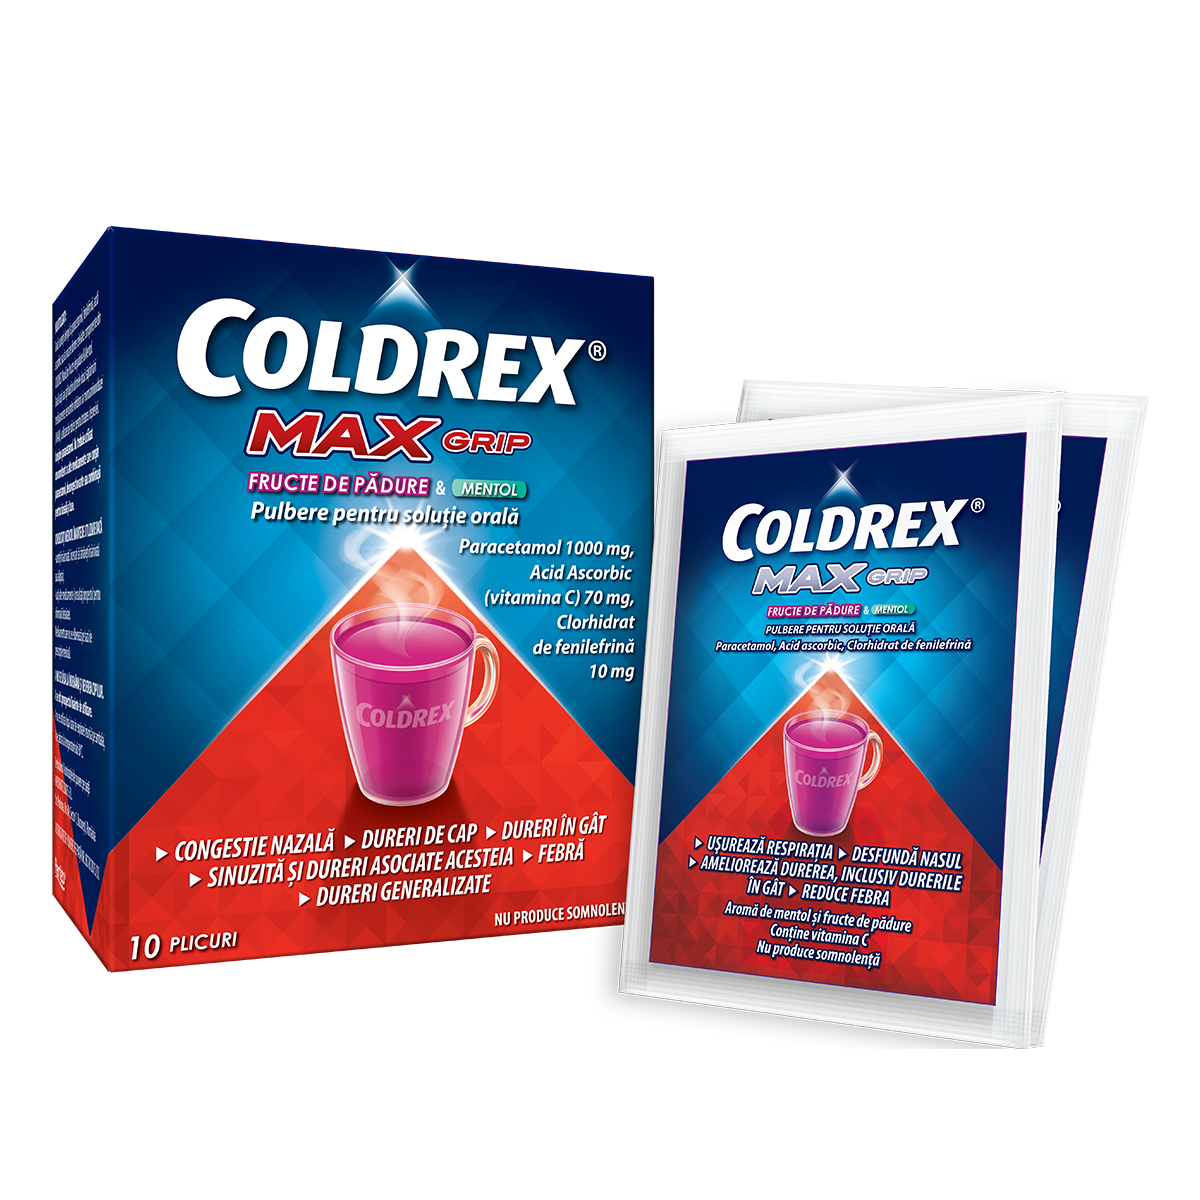 OTC (medicamente care se eliberează fără prescripție medicală) - Coldrex Maxgrip fructe de pădure și mentol x 10pl, epastila.ro